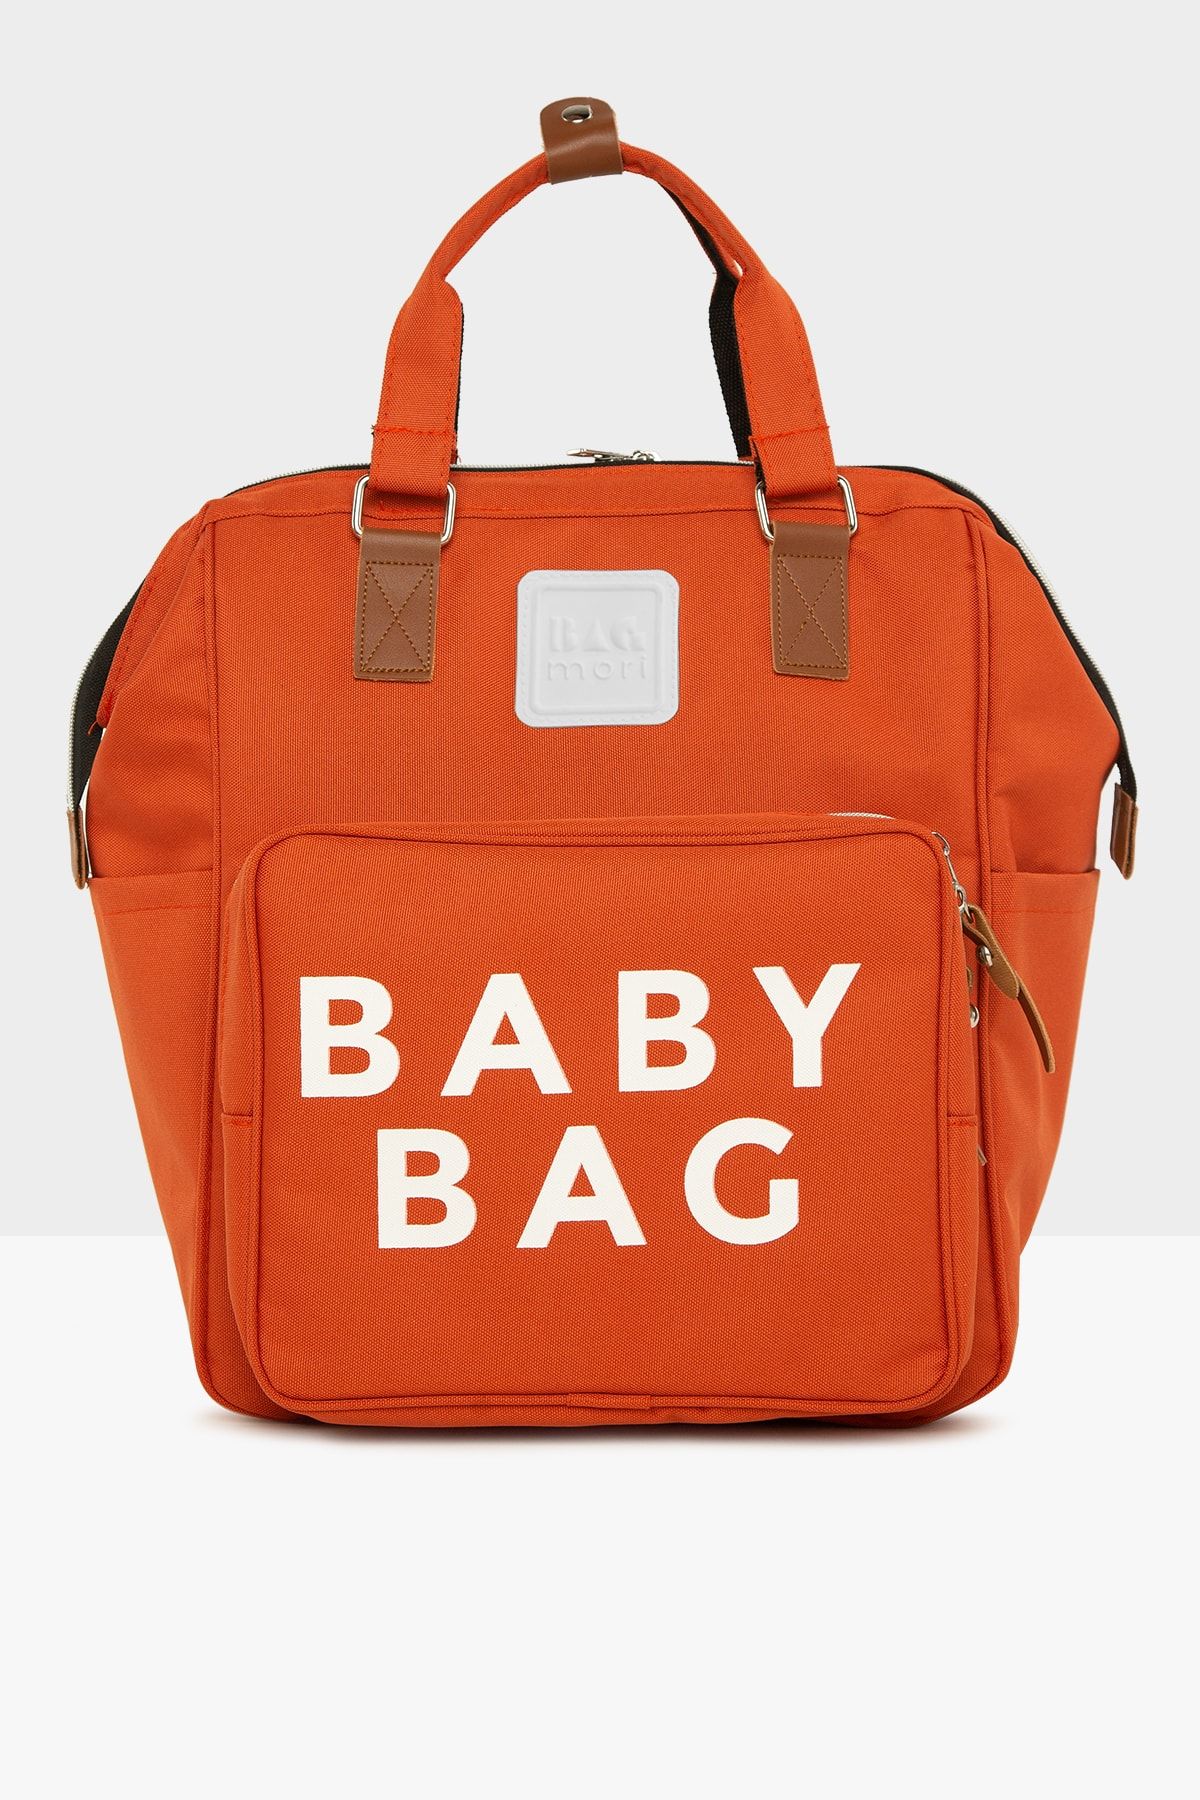 Bagmori Kiremit Baby Bag Baskılı Cepli Anne Bebek Bakım Sırt Çantası M000007129